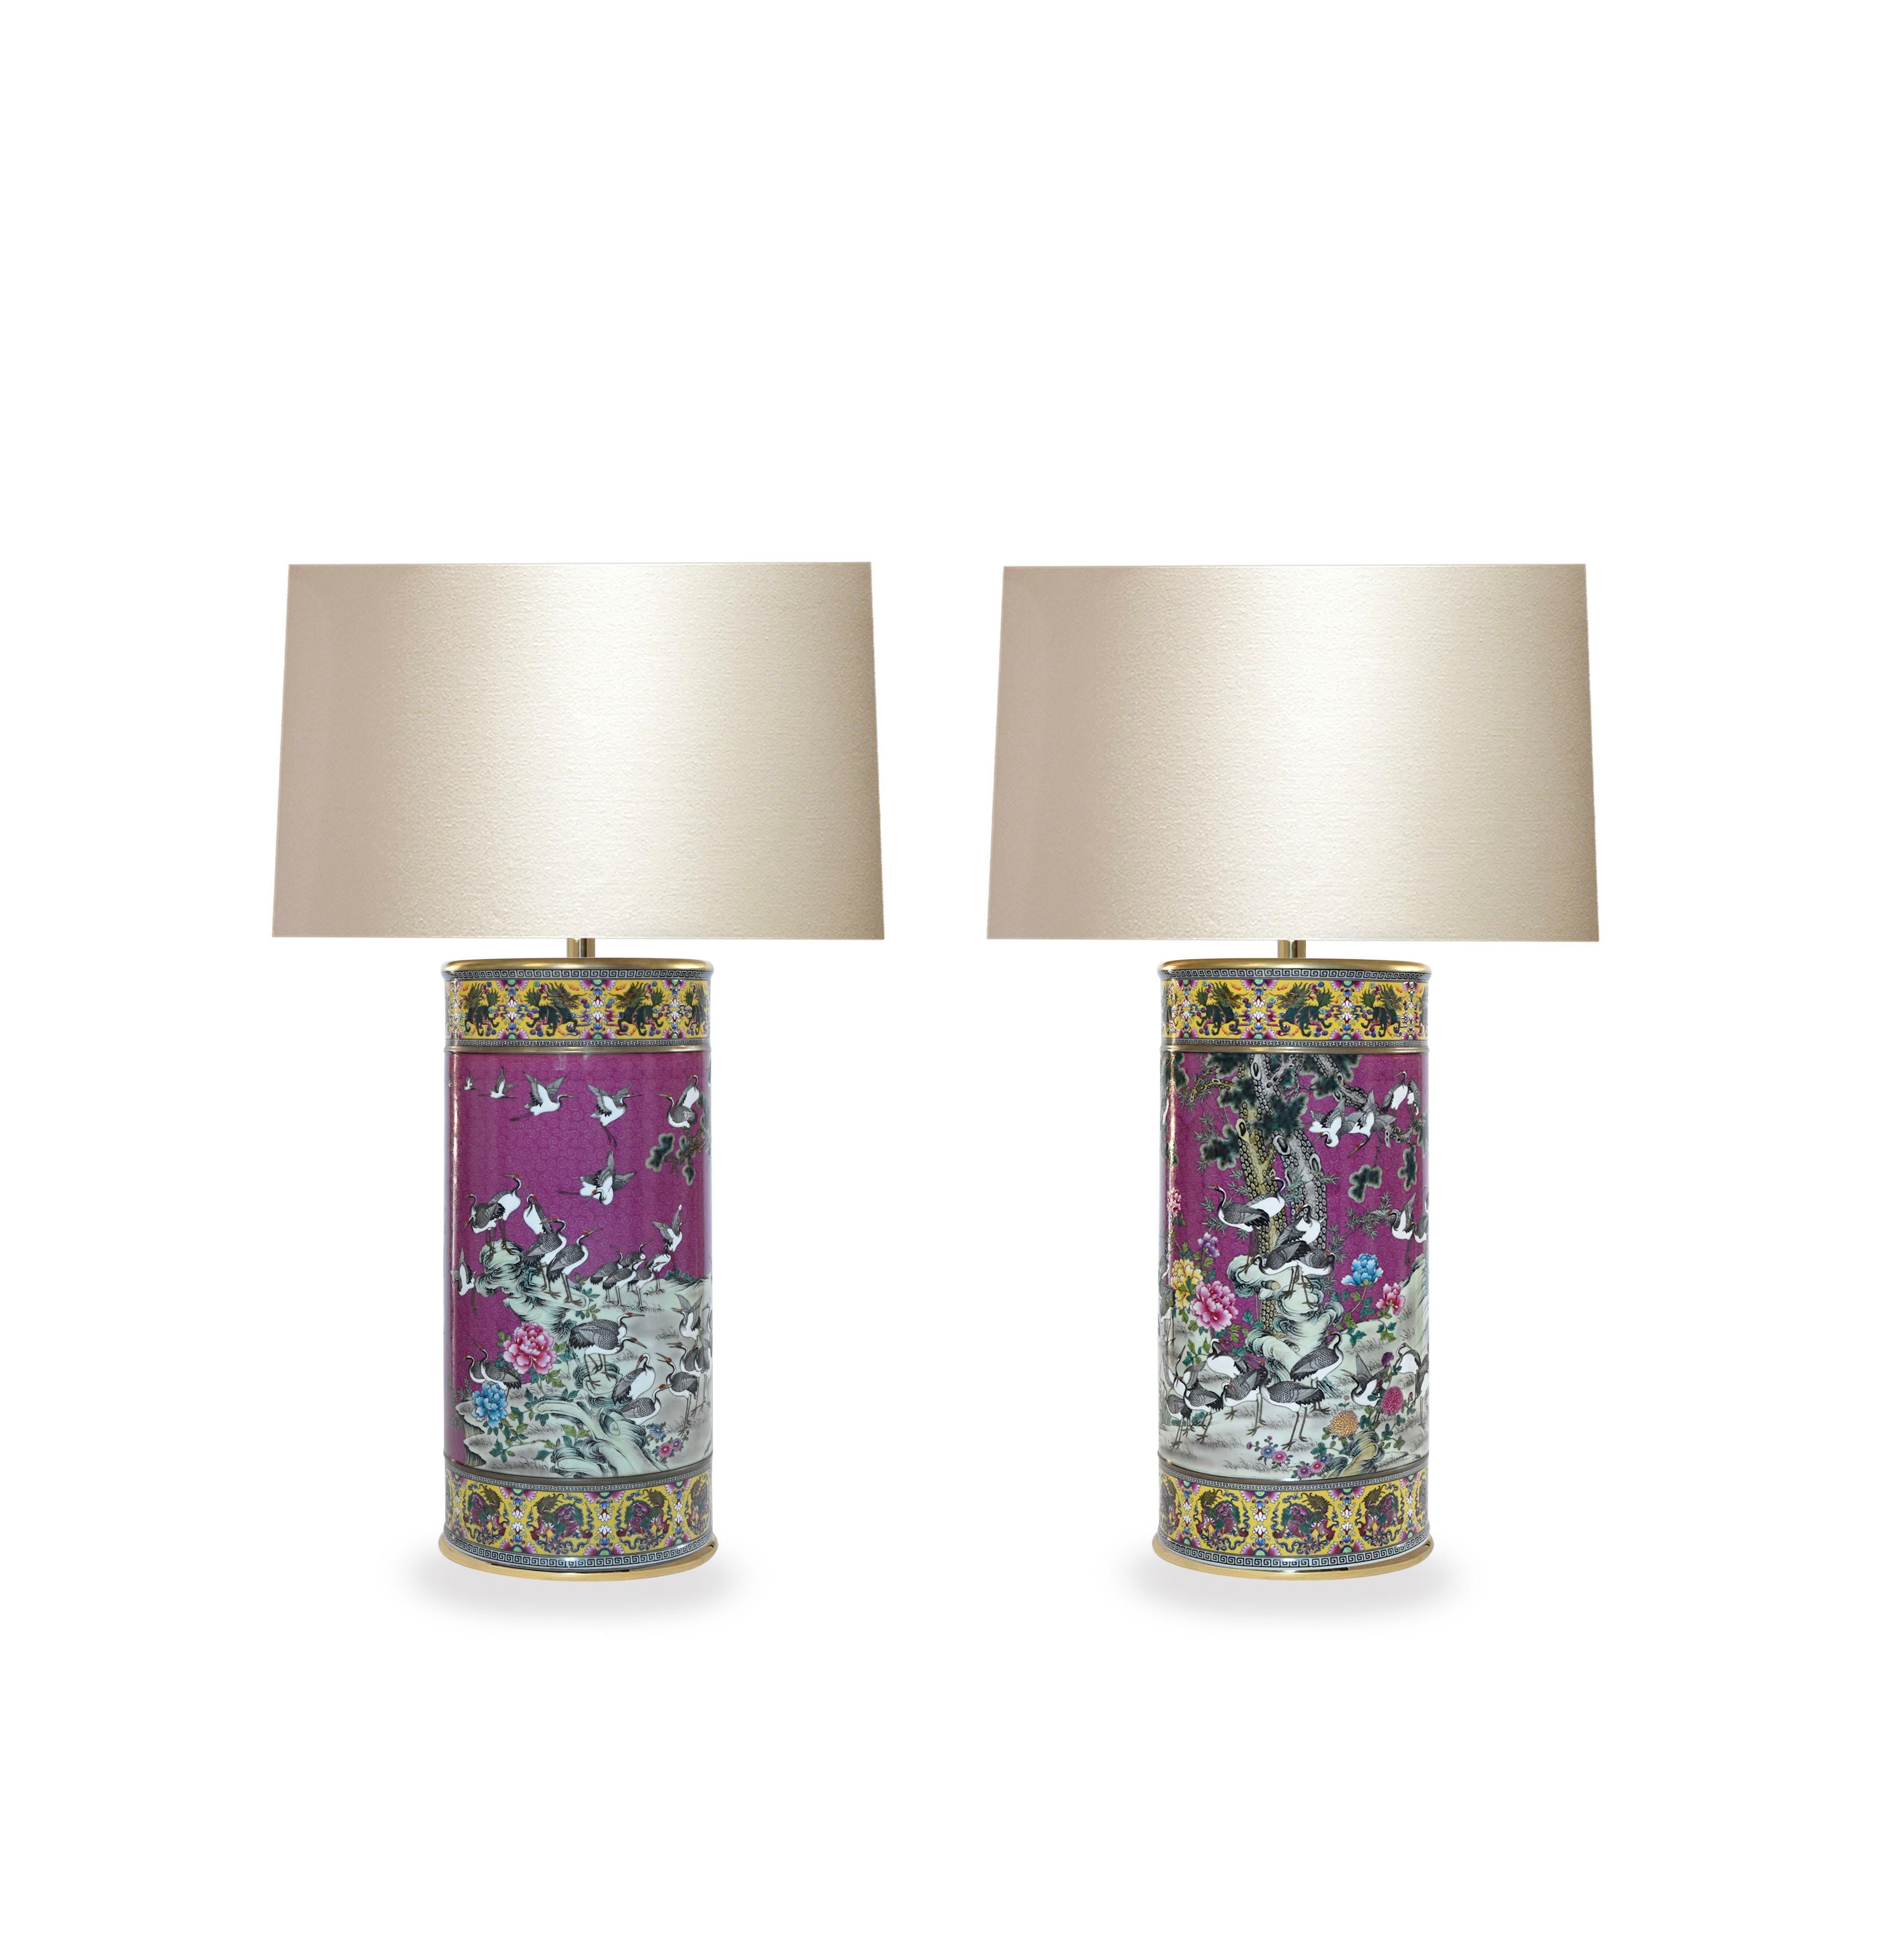 Paar Famille Rose Porzellanlampen mit fein gemalten Vögeln und Blumenblütendekor.
Bis zur Oberkante des Porzellans: 18.75